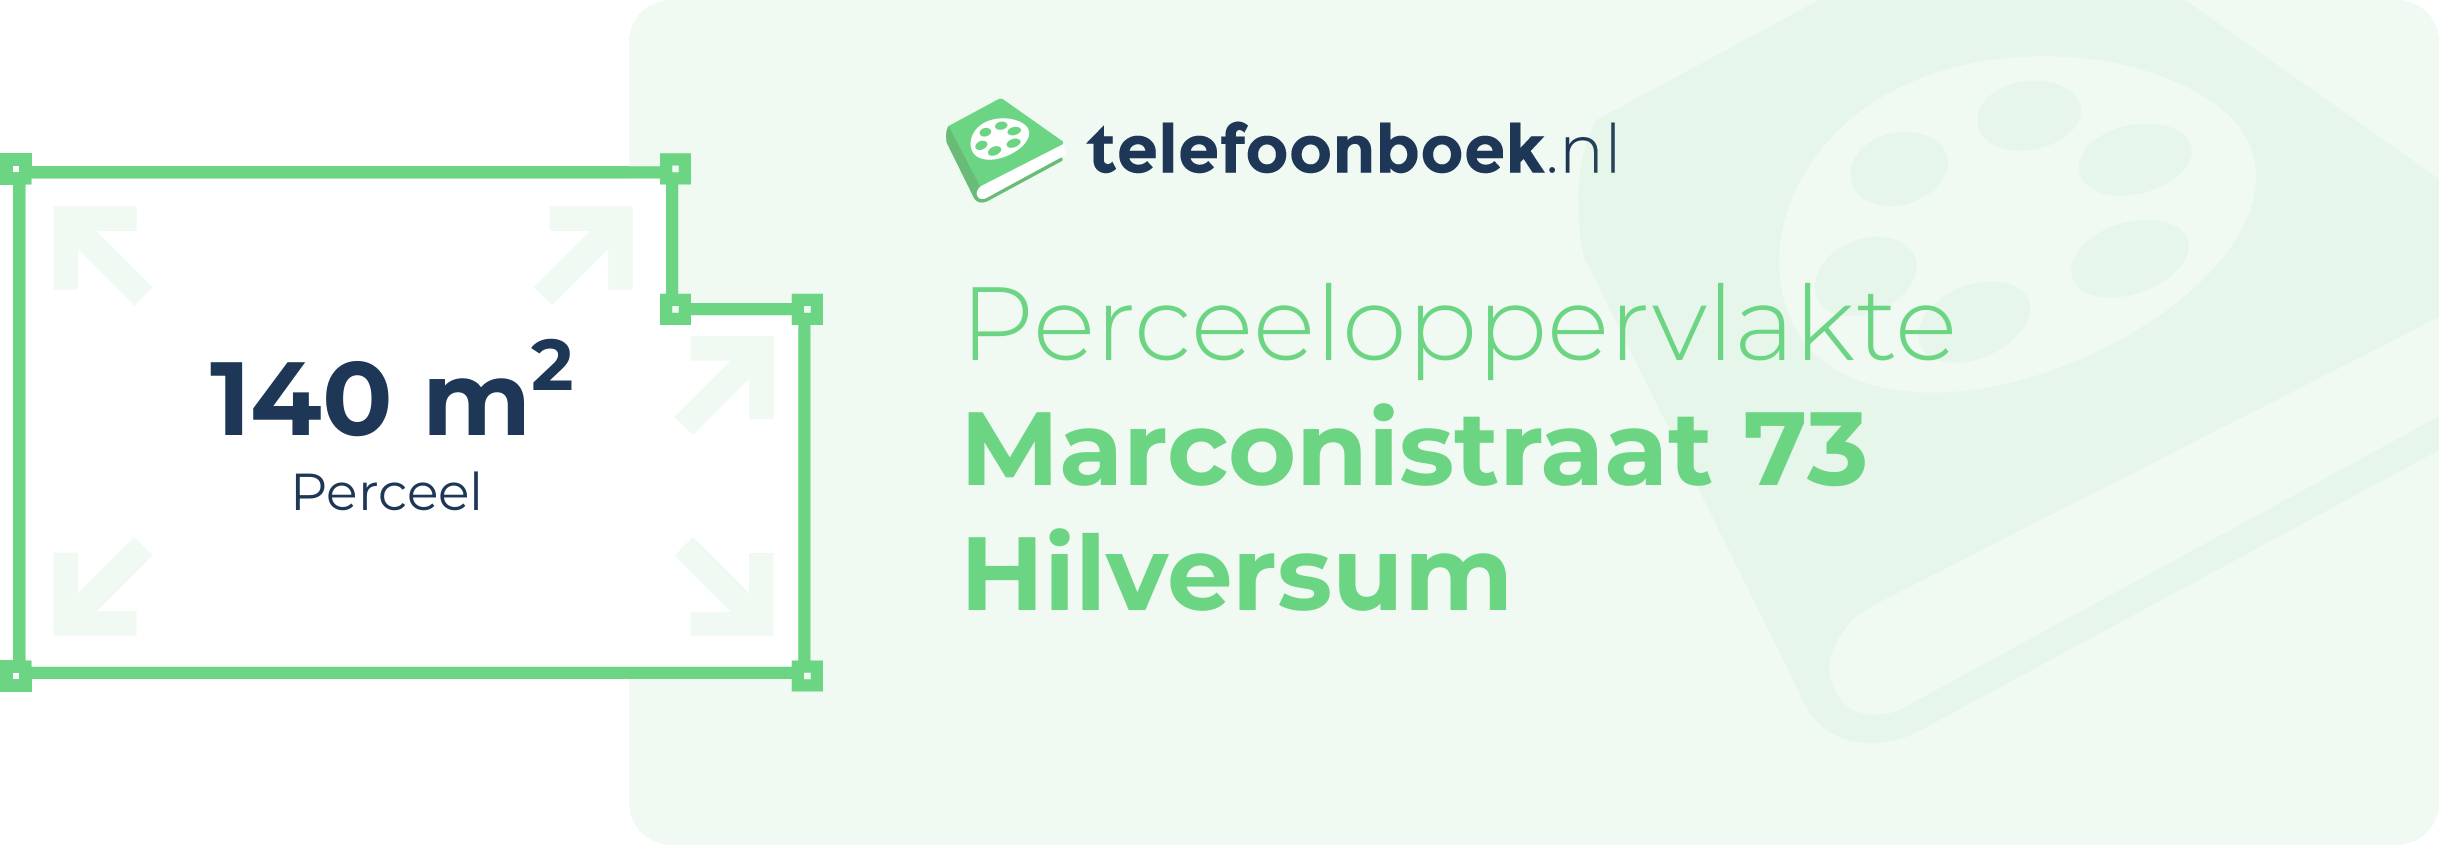 Perceeloppervlakte Marconistraat 73 Hilversum